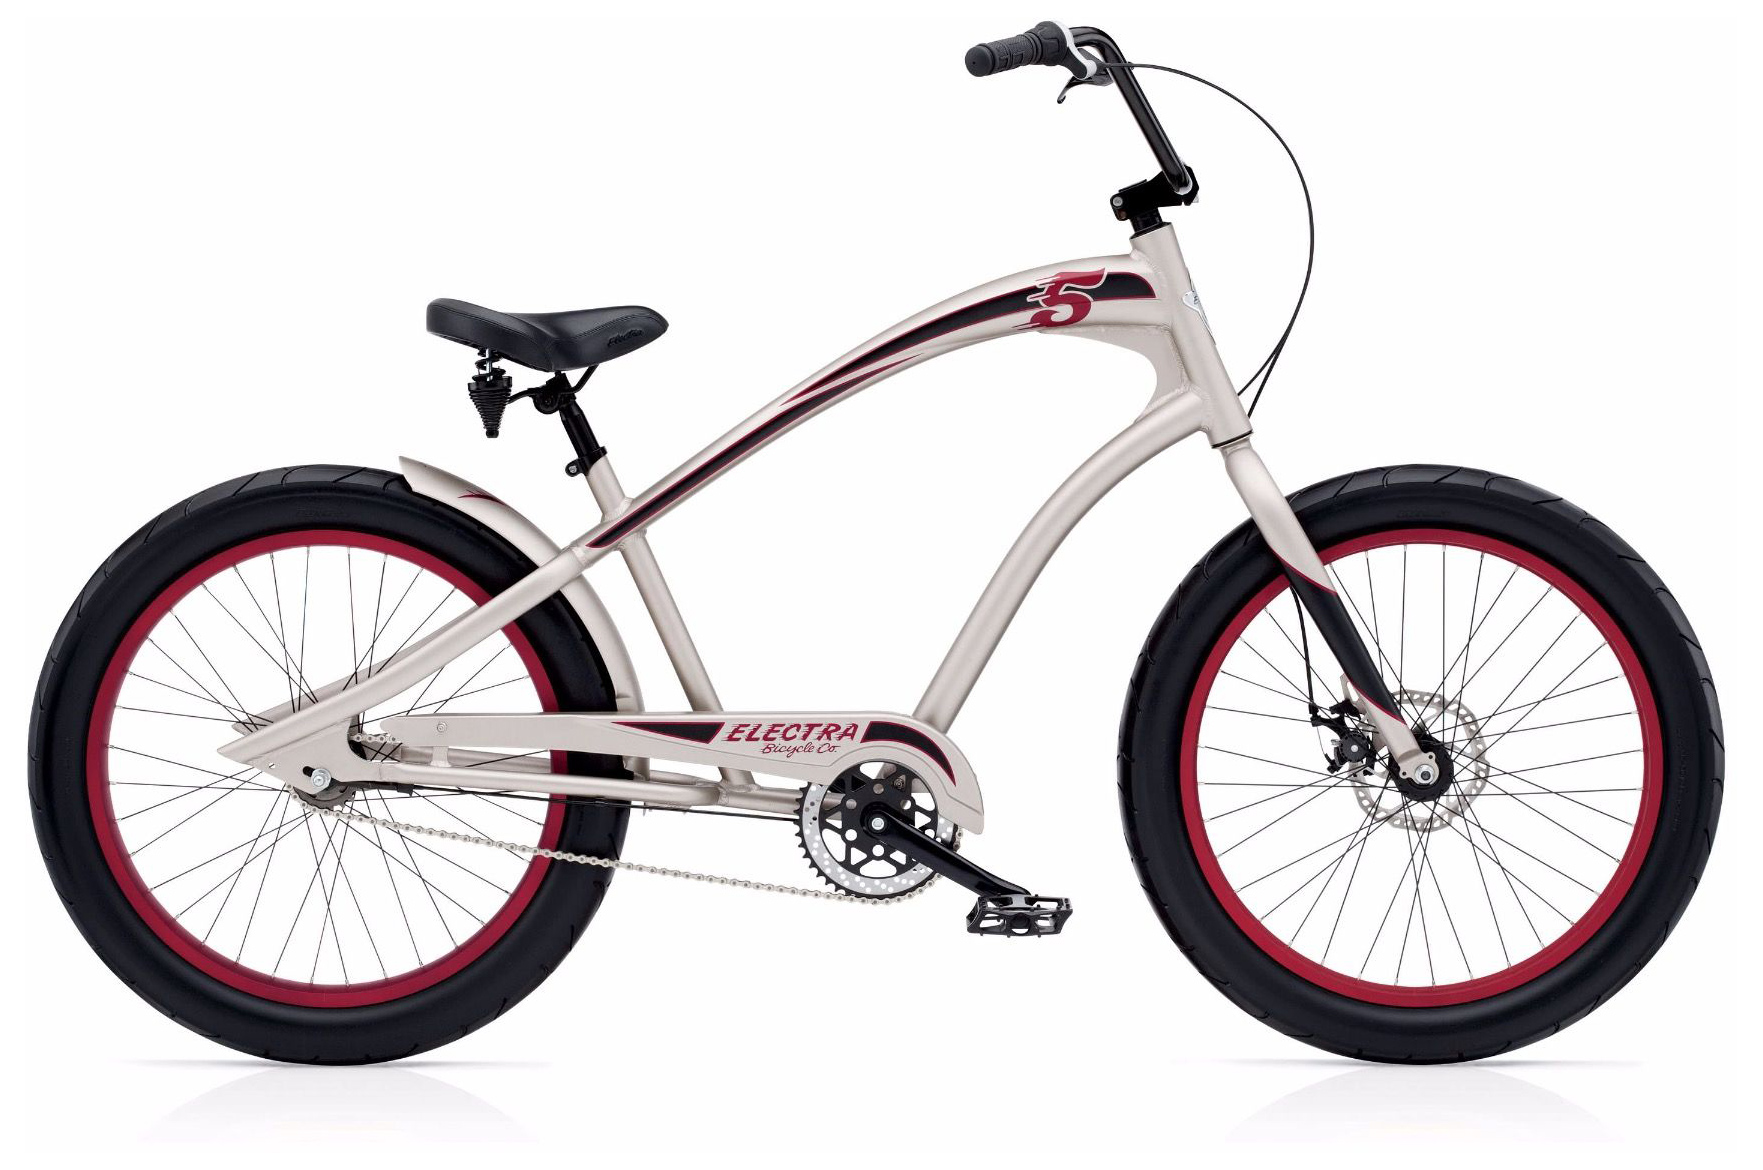  Отзывы о Велосипеде круизере Electra Fast 5 3i 2019